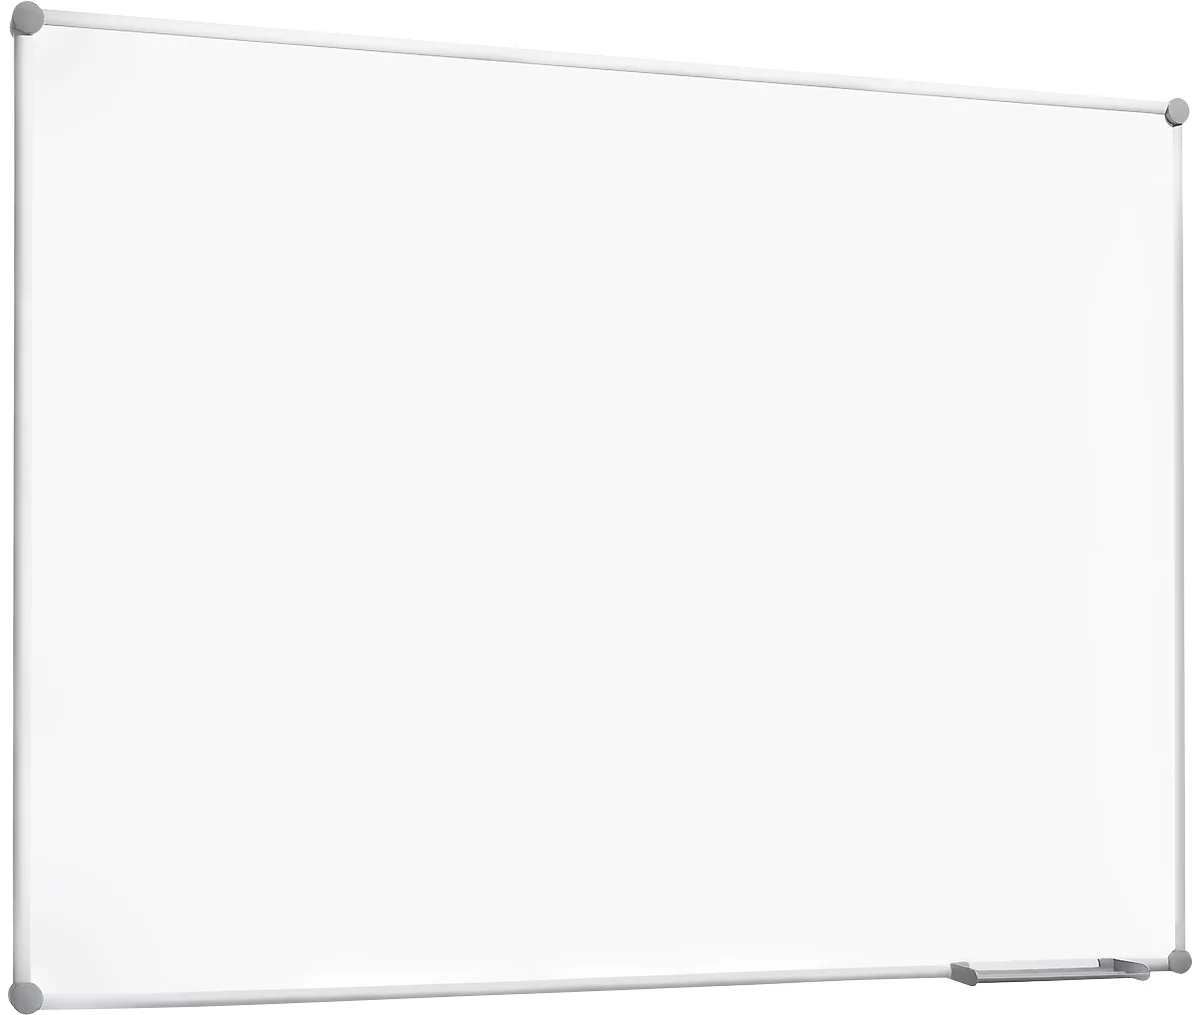 Pizarra blanca 2000 MAULpro, revestida de plástico blanco, marco gris platino, 1500 x 1000 mm